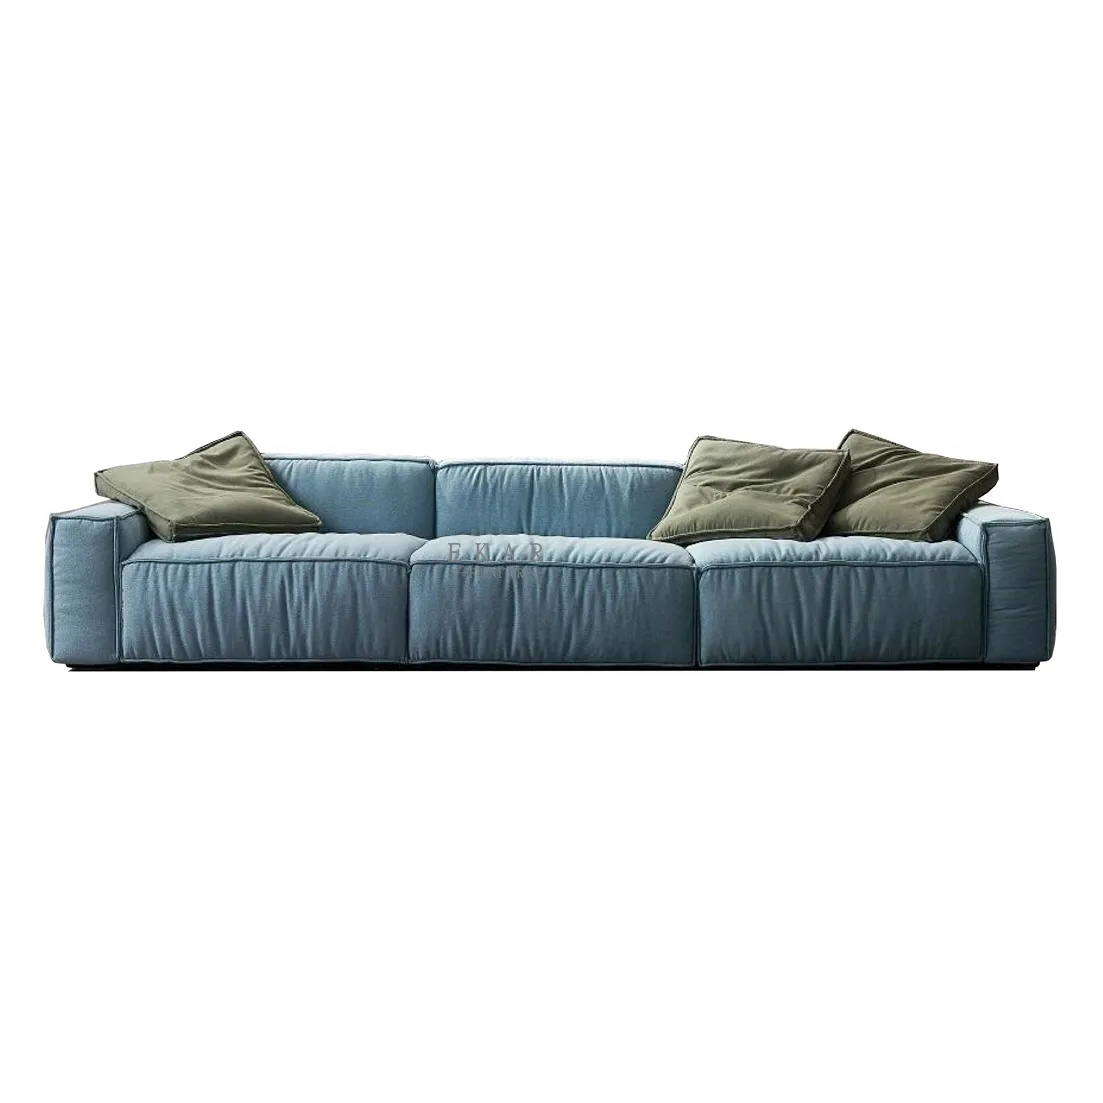 Hot Sale Wohnzimmer möbel Stoff Schnitts ofa Daunen füllung Modular Free Combination Couch Anpassbare Sofas